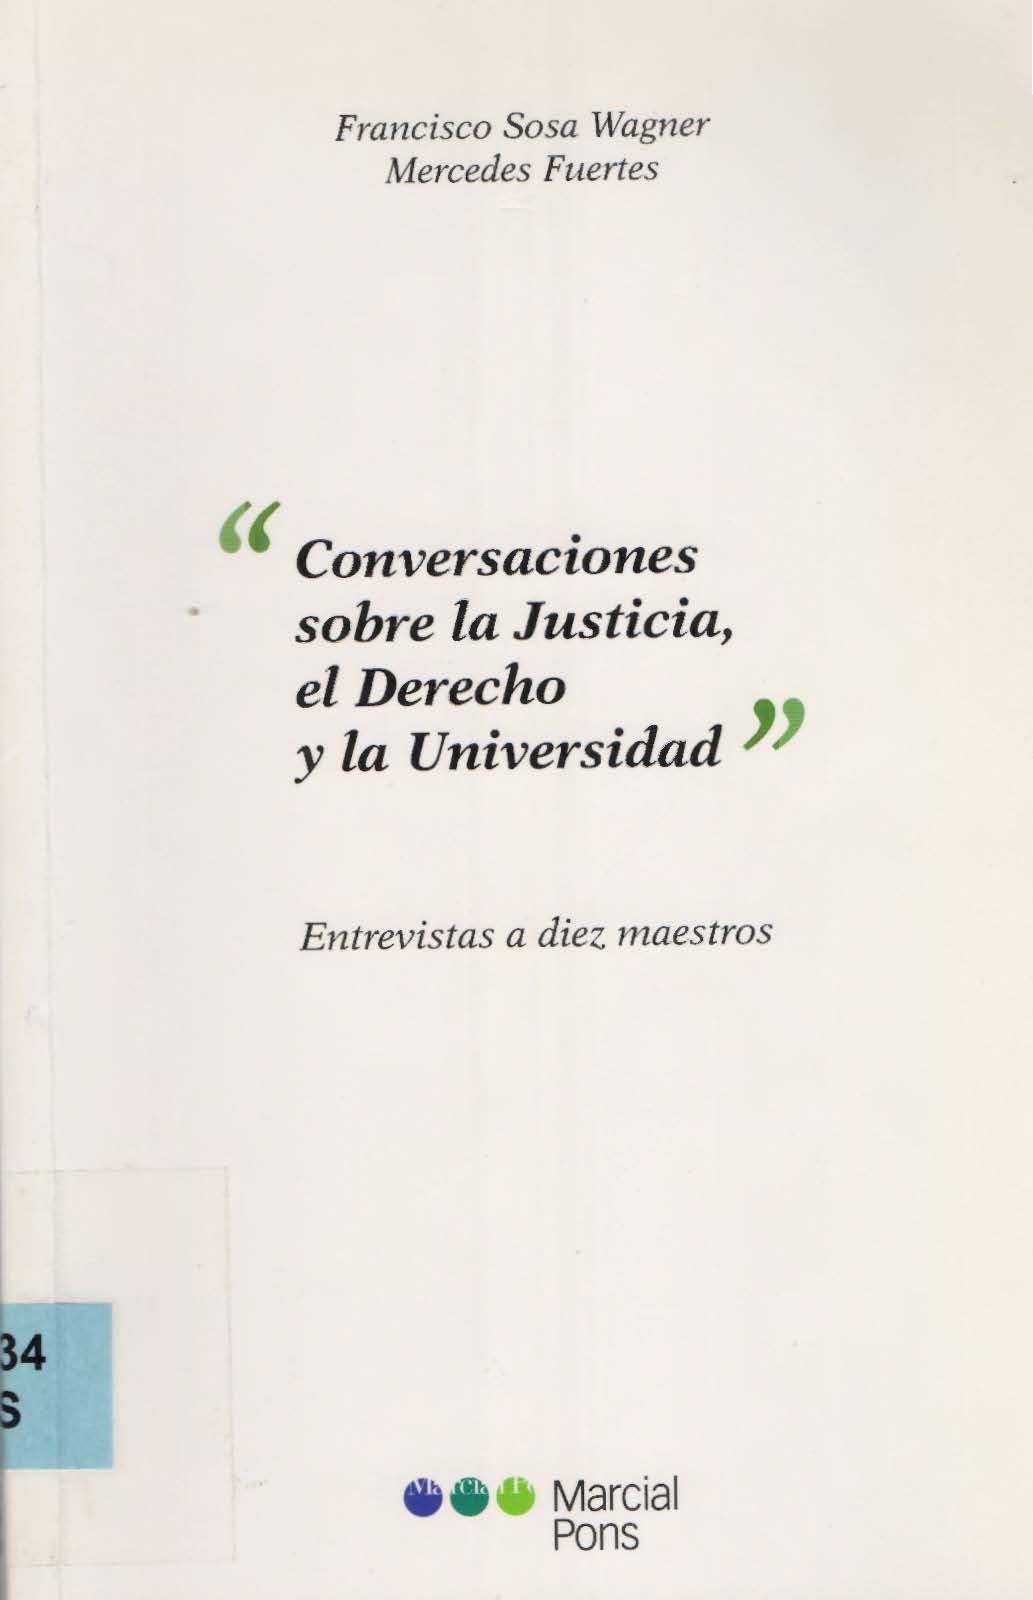 Imagen de portada del libro Conversaciones sobre la justicia, el derecho y la universidad